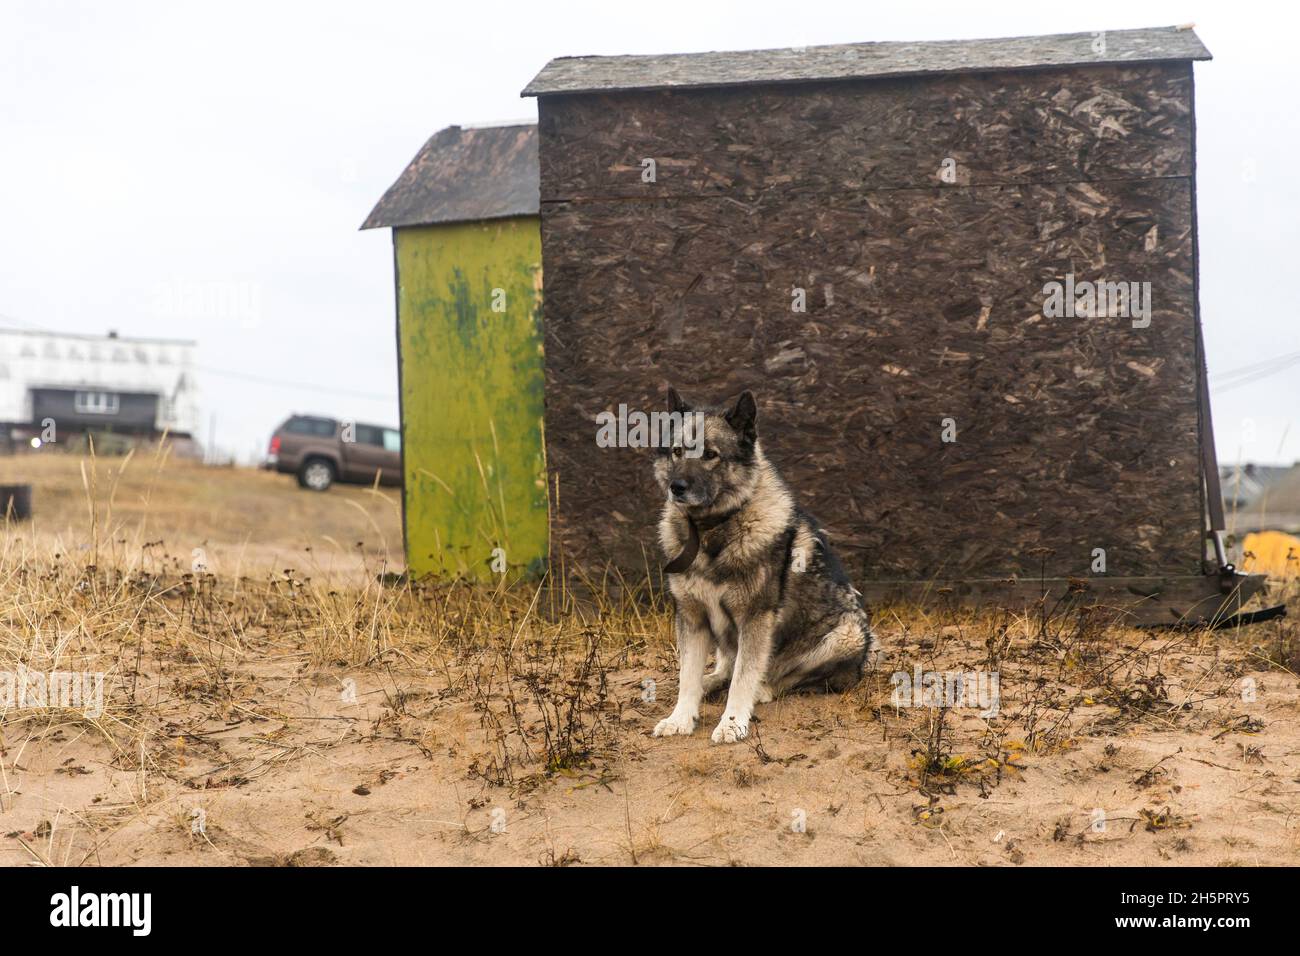 Kuzomen, distretto di Terskiy, regione di Murmansk, Russia - un villaggio coperto di sabbia. Il cane si siede vicino a due capannoni da pesca Foto Stock